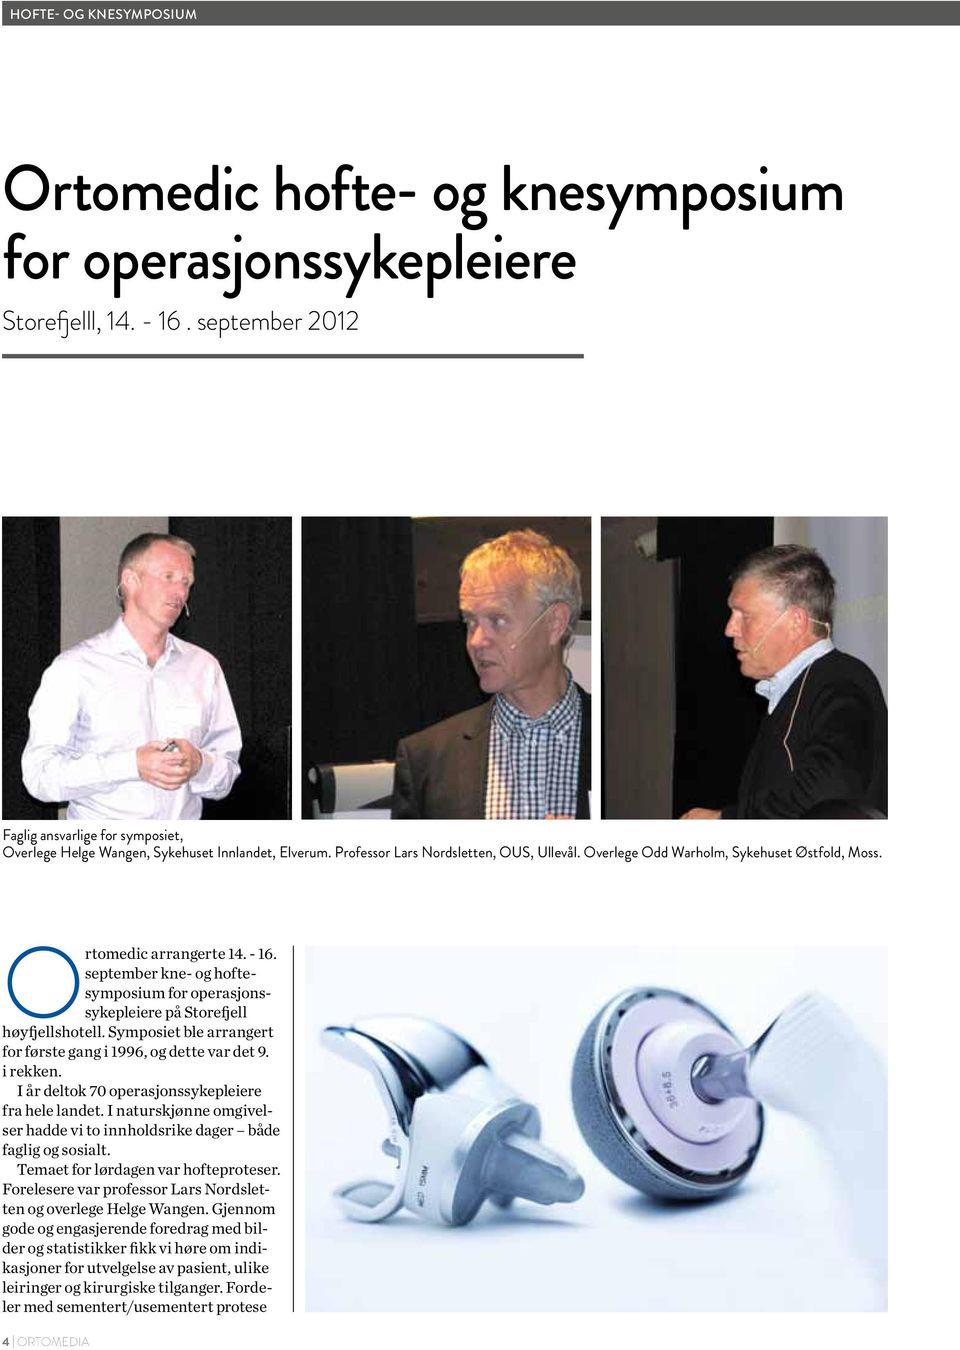 ortomedic arrangerte 14. - 16. september kne- og hoftesymposium for operasjonssykepleiere på Storefjell høyfjellshotell. Symposiet ble arrangert for første gang i 1996, og dette var det 9. i rekken.